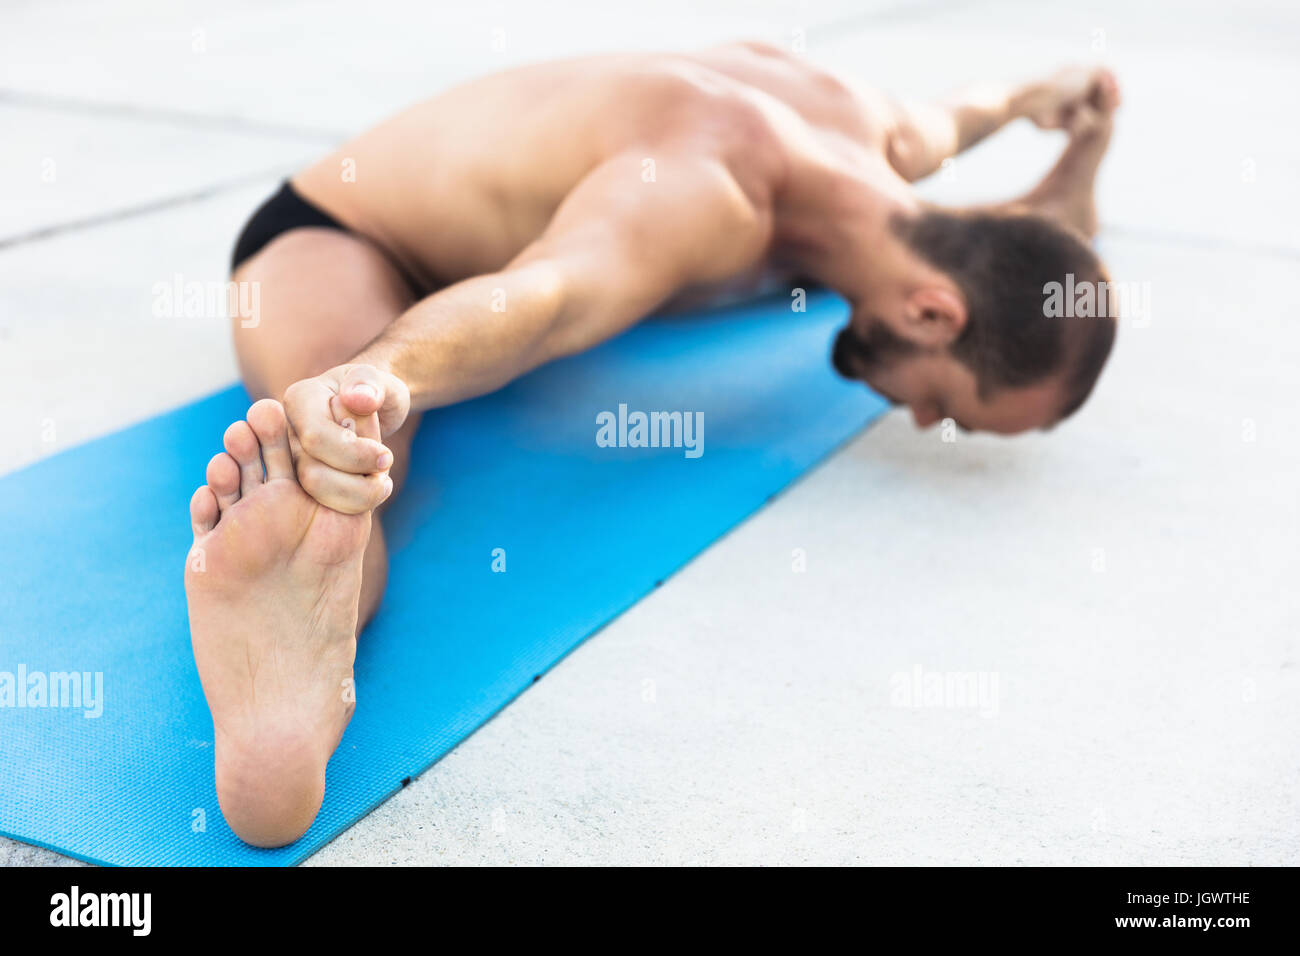 El hombre practicando yoga, sentado en la estera del yoga haciendo las divisiones y tocar los dedos de los pies Foto de stock